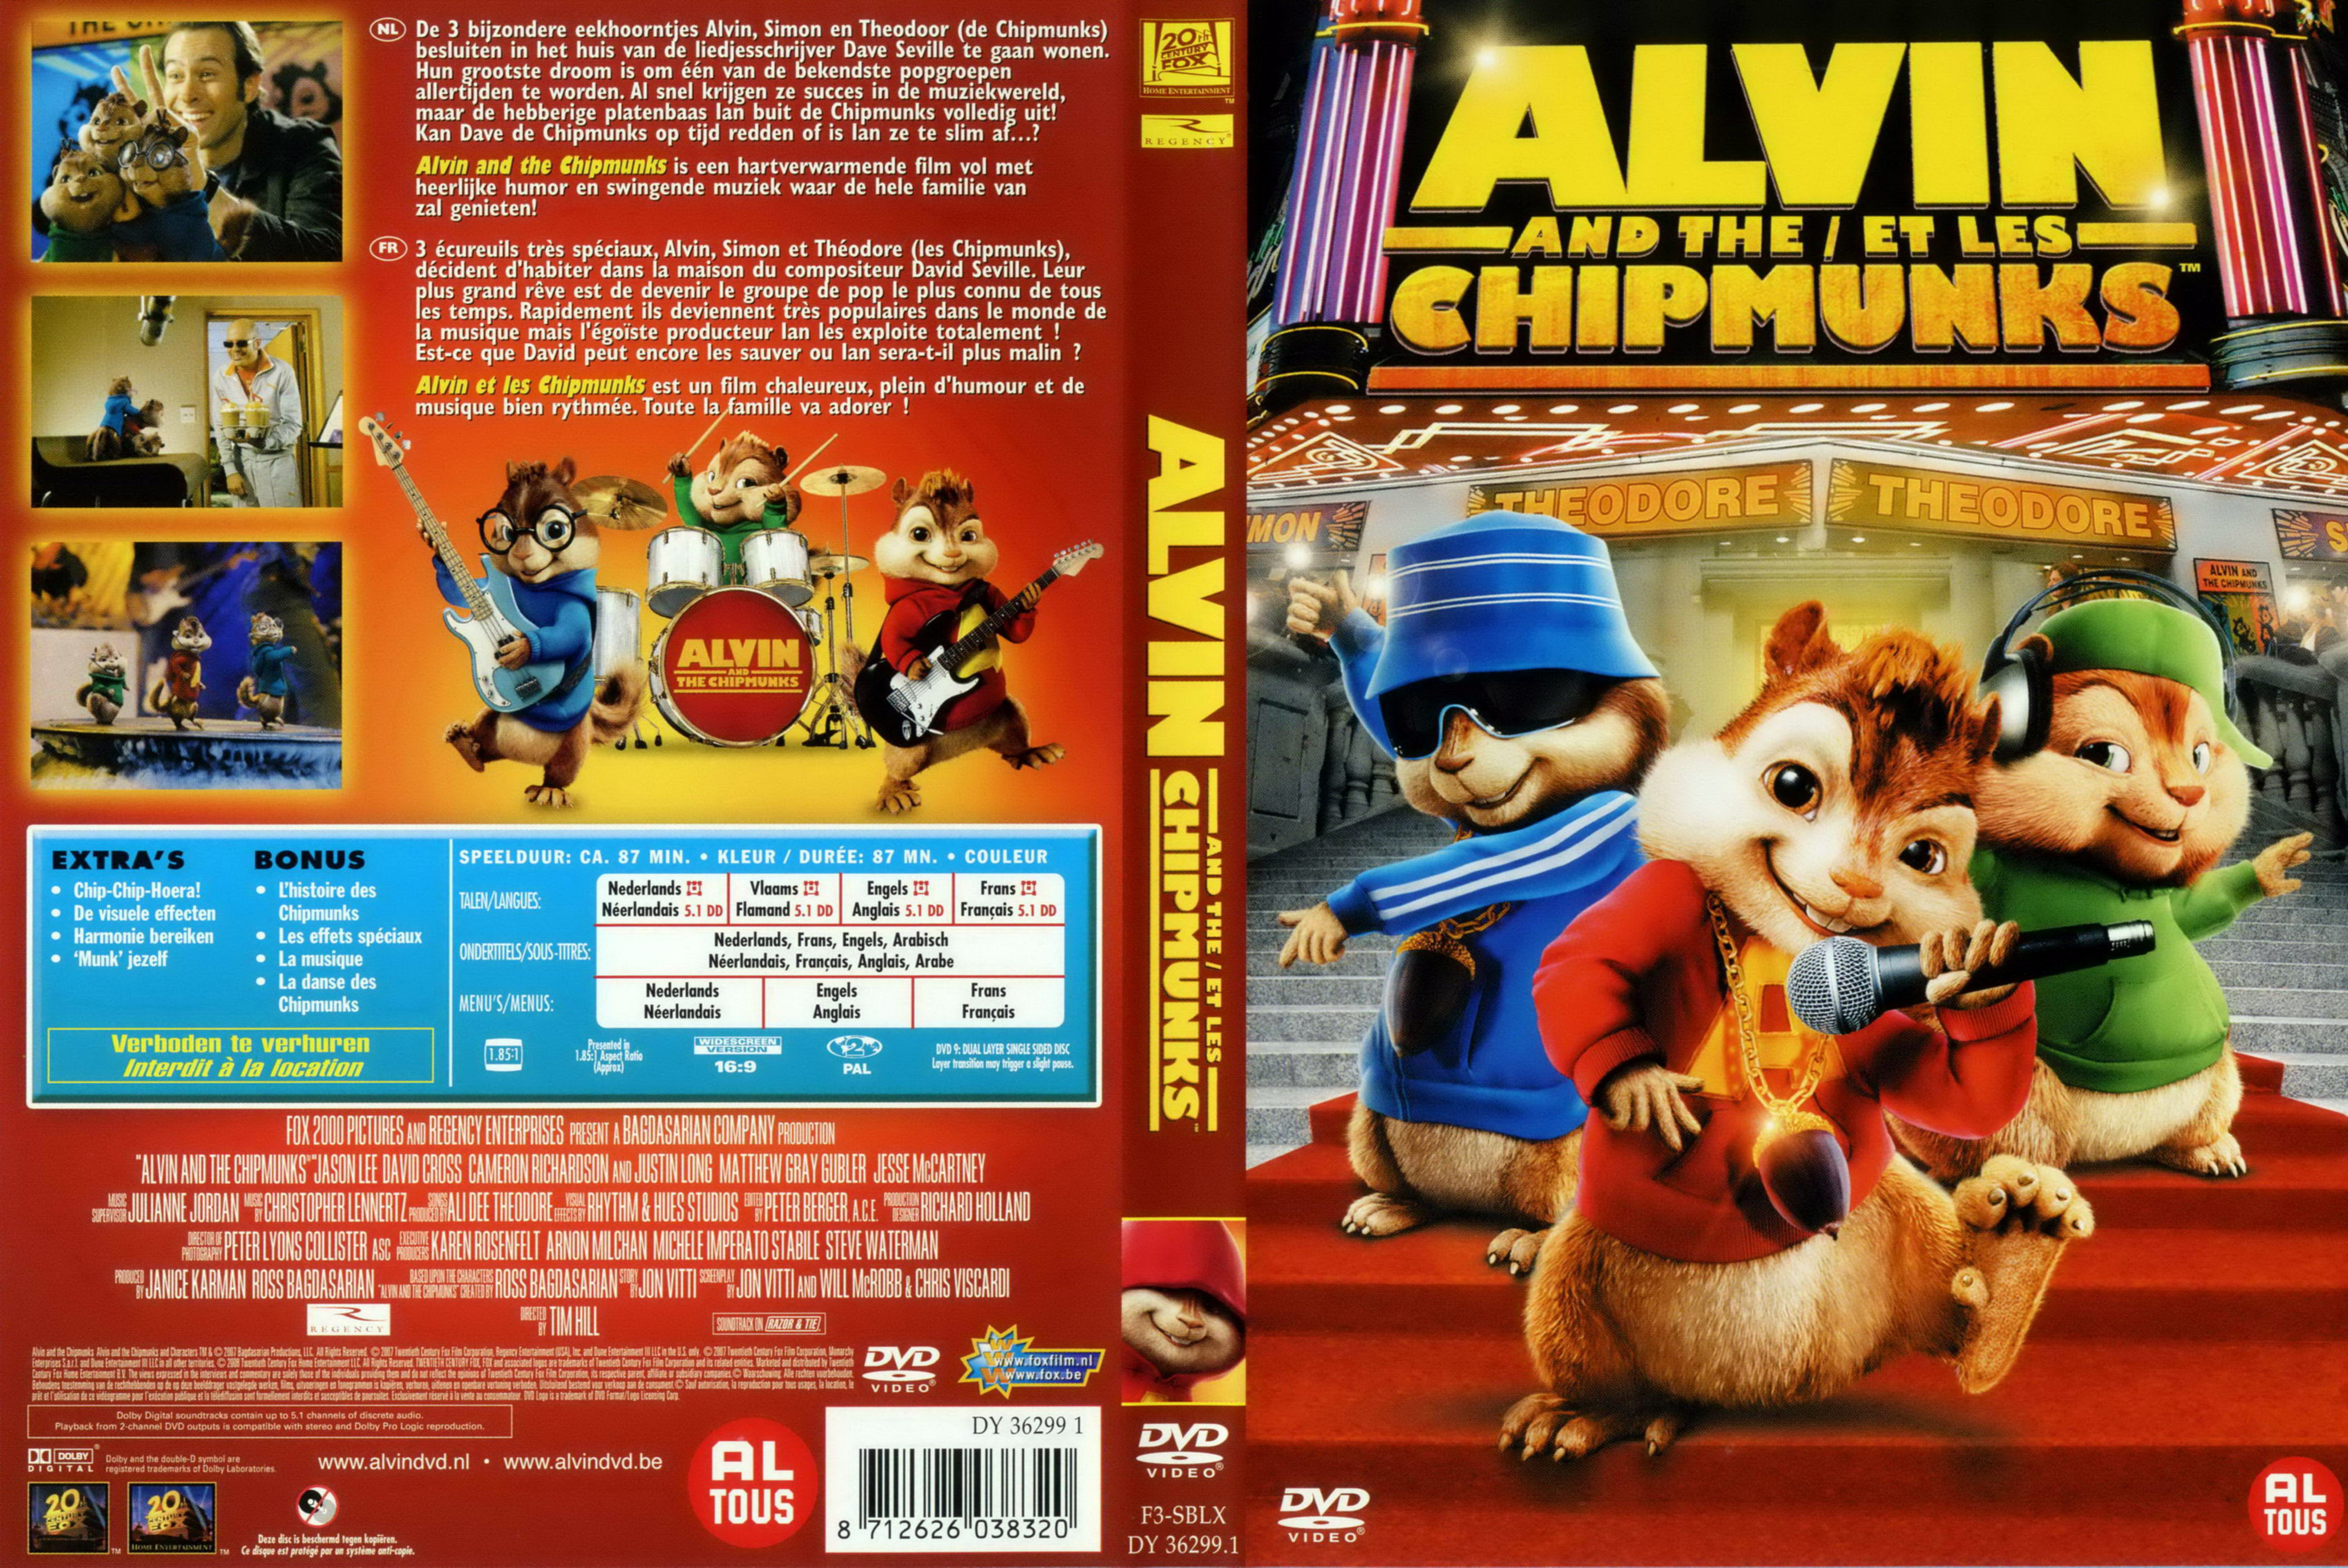 Jaquette DVD Alvin et les Chipmunks v3